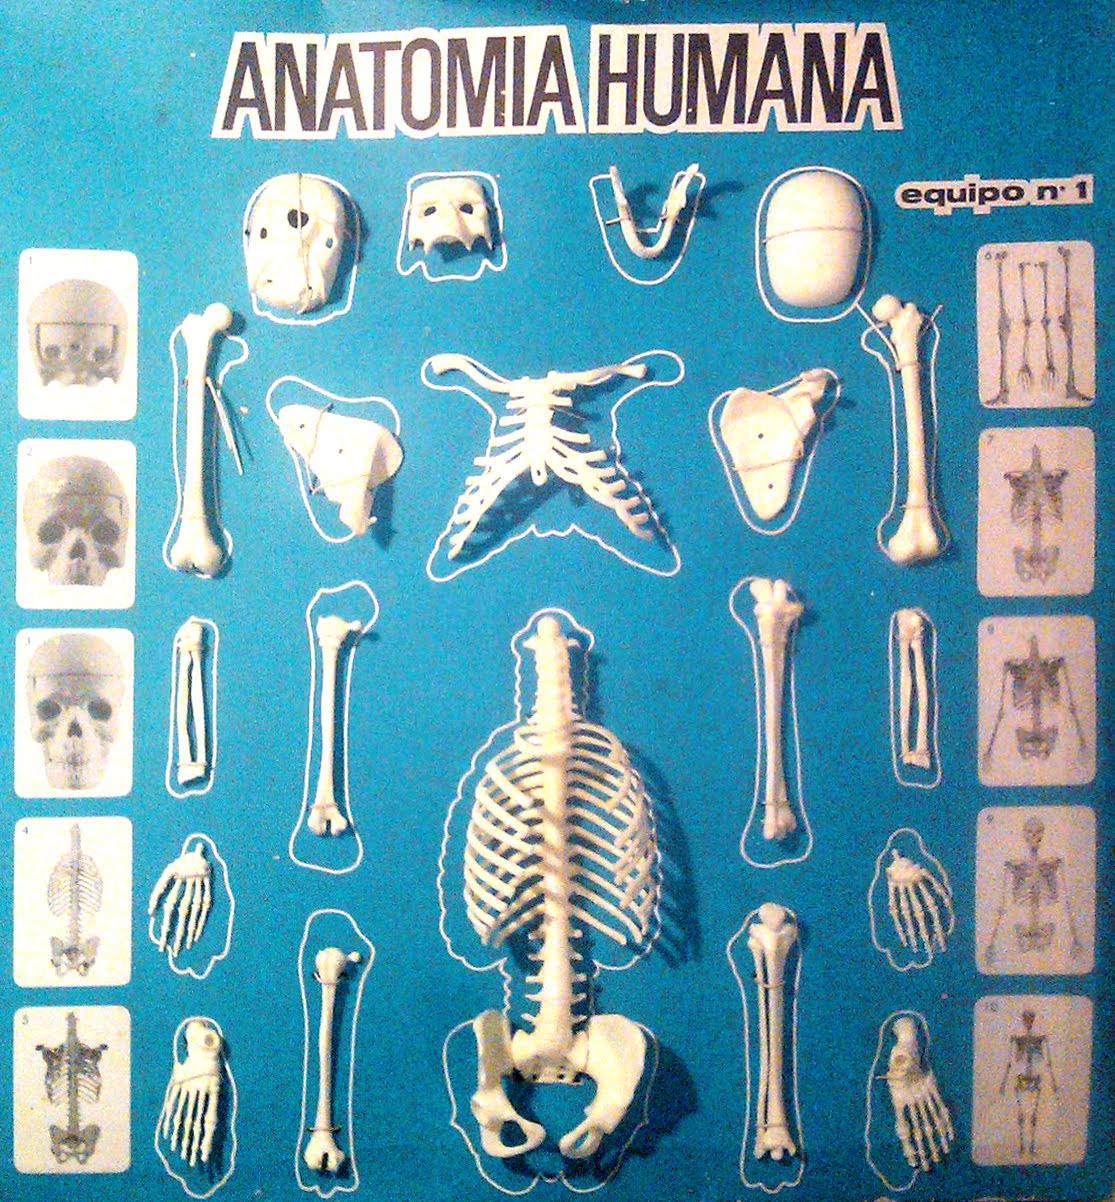 Anatomia humana serima